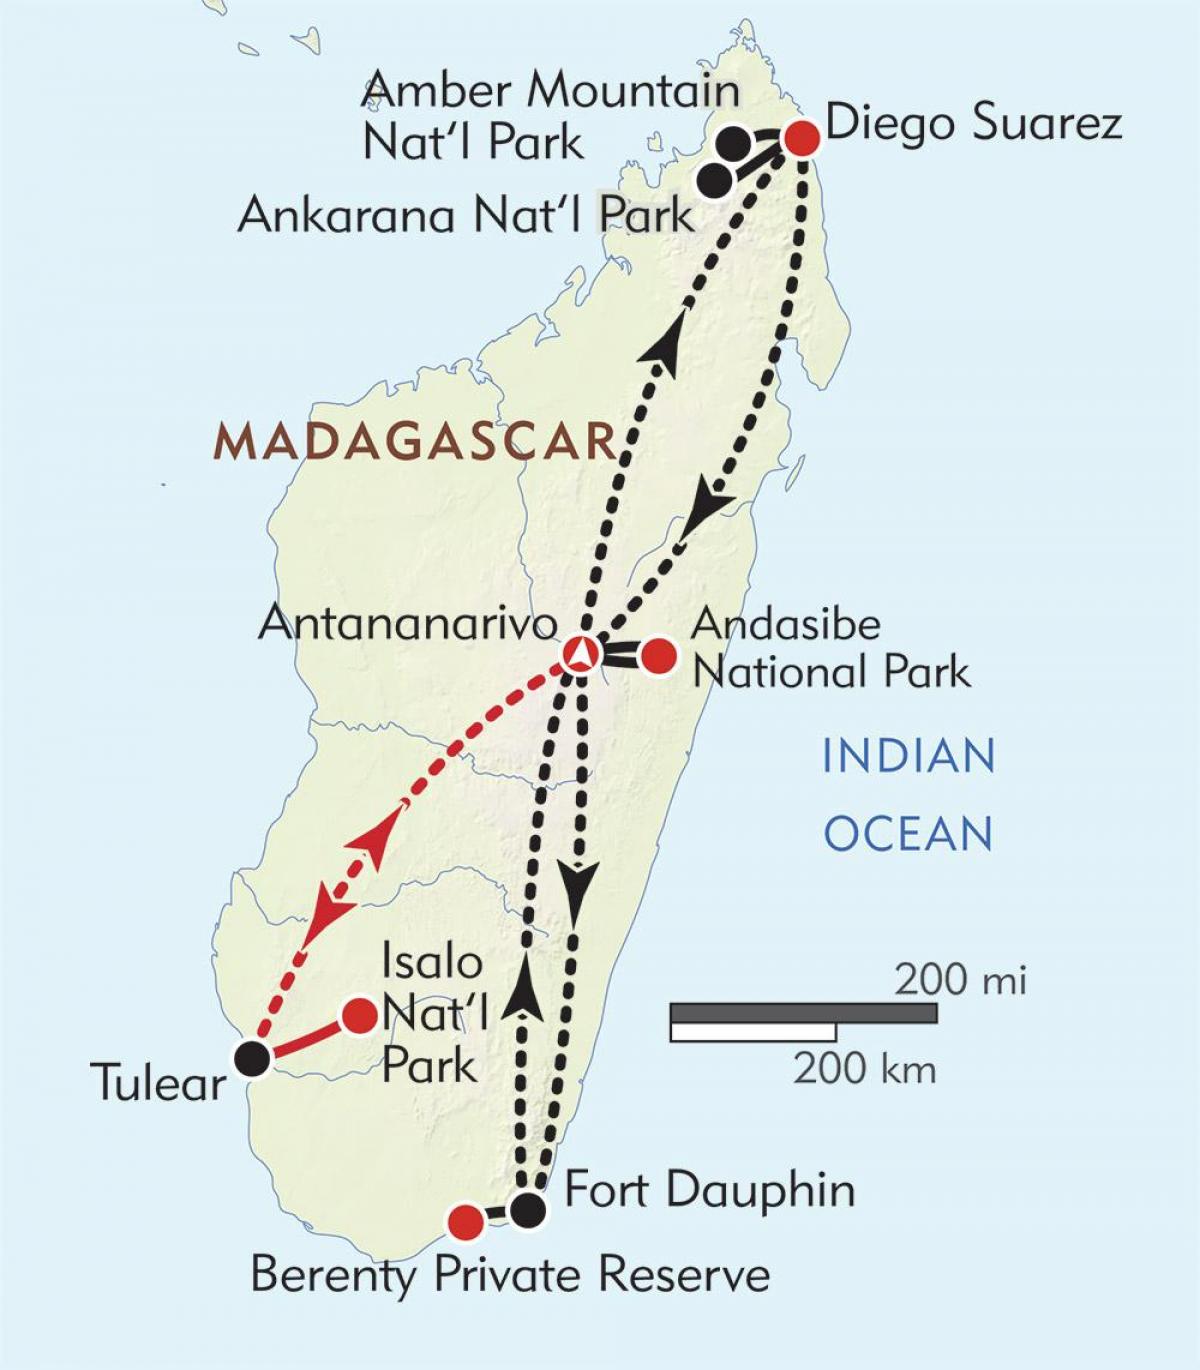 ανταναναρίβο της Μαδαγασκάρης χάρτης